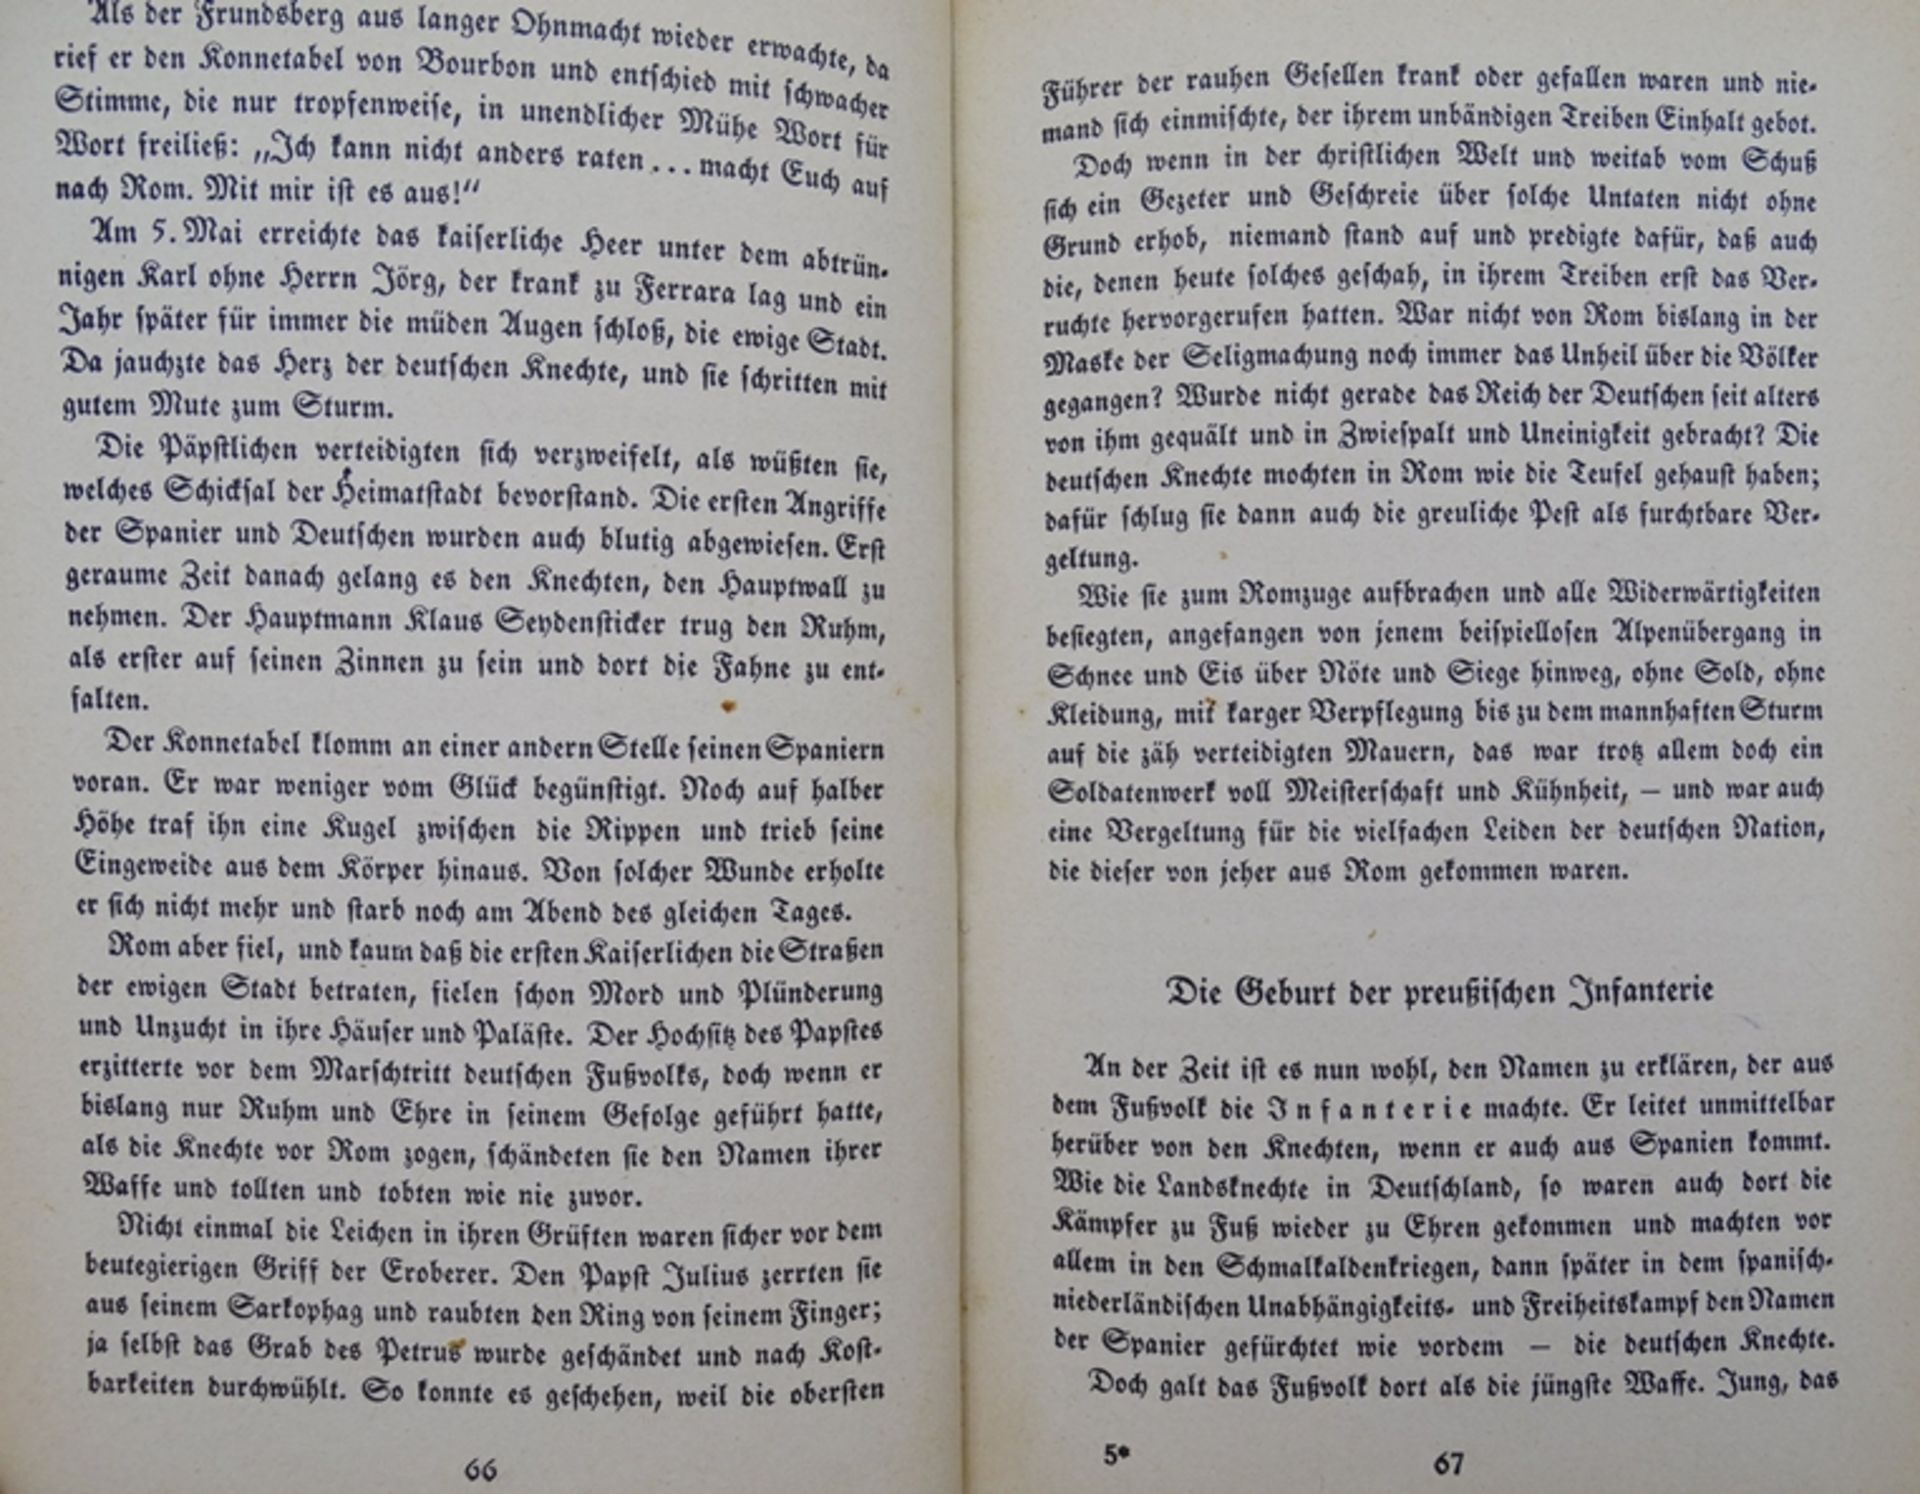 Unvergleichliche deutsche Infantrie, Freiherr Grote, 1942, Alters-u. Gebrauchsspuren - Image 4 of 4